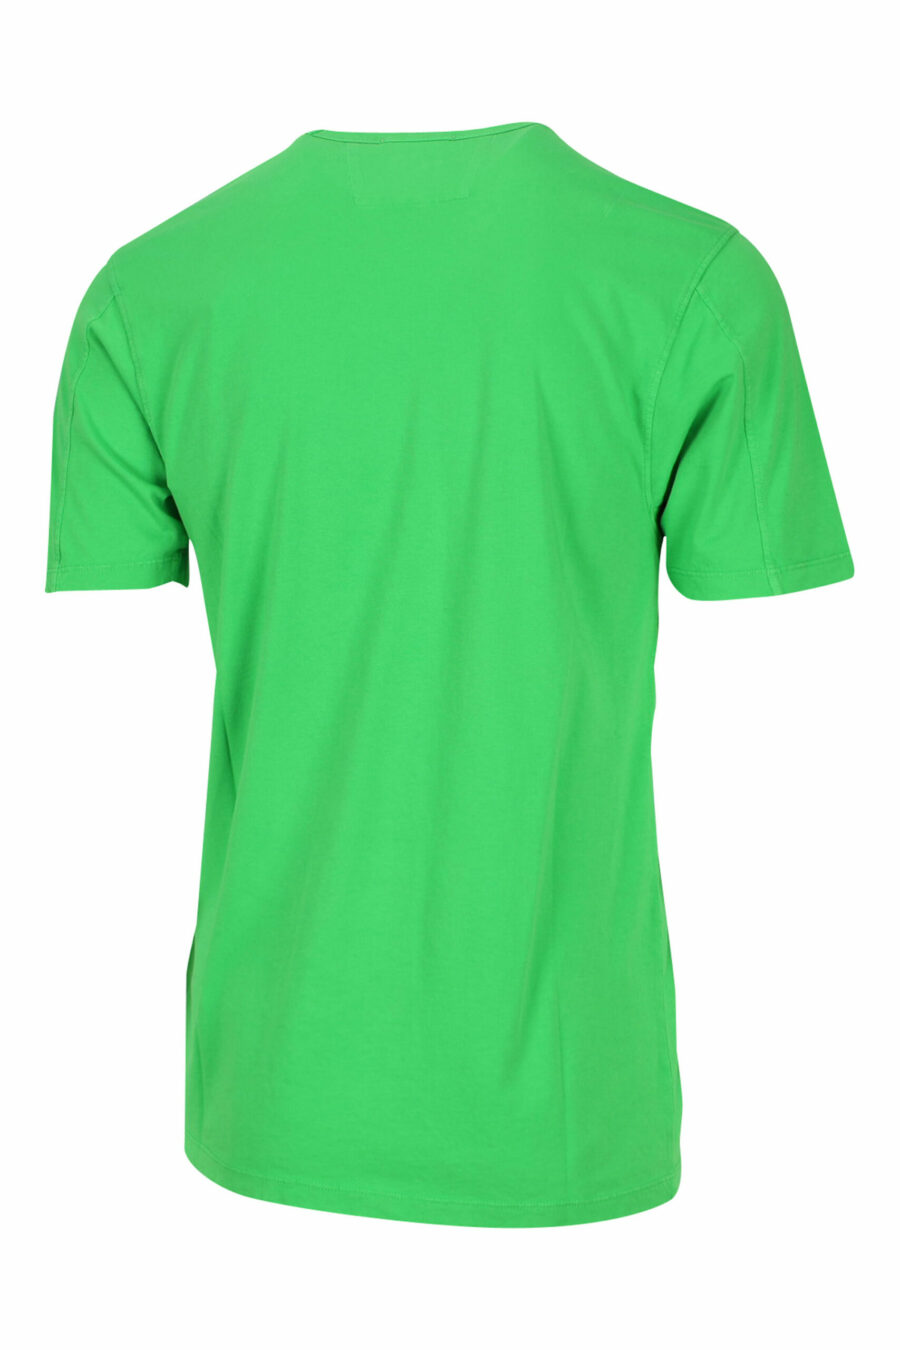 Grünes T-Shirt mit zentriertem Minilog - 7620943594997 1 skaliert